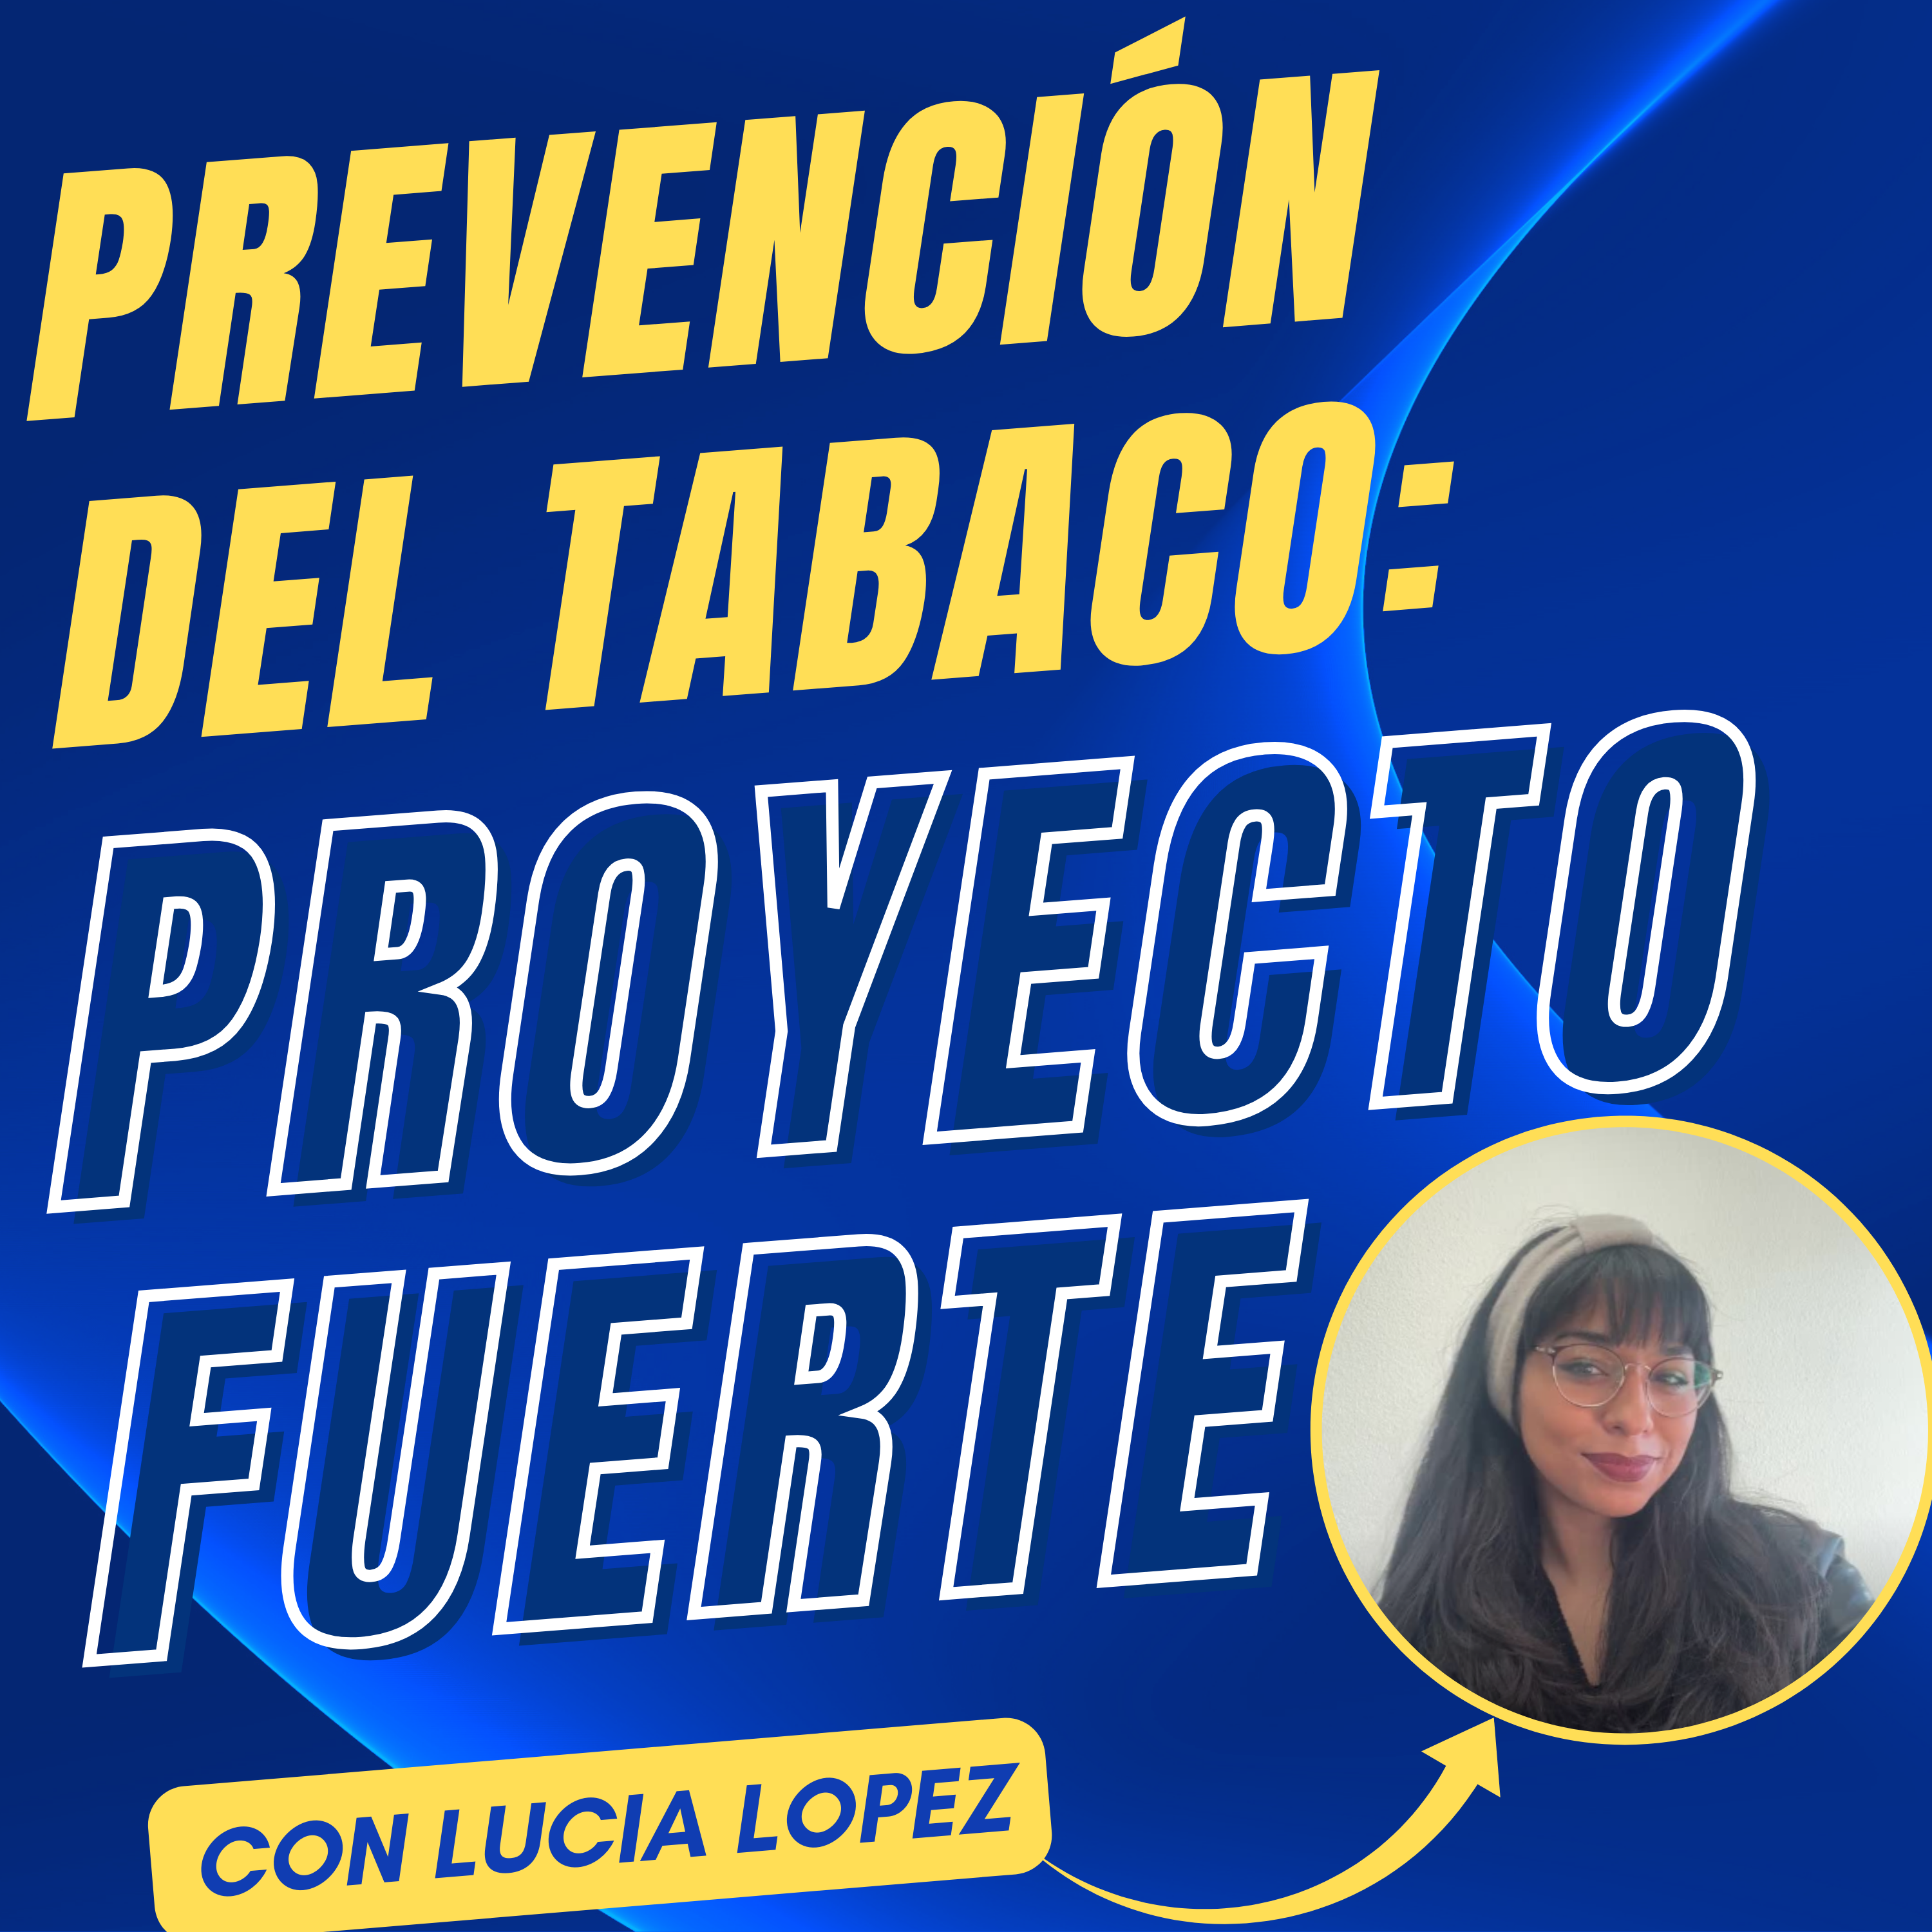 Proyecto FUERTE: Estrategias en la Prevención del Tabaquismo